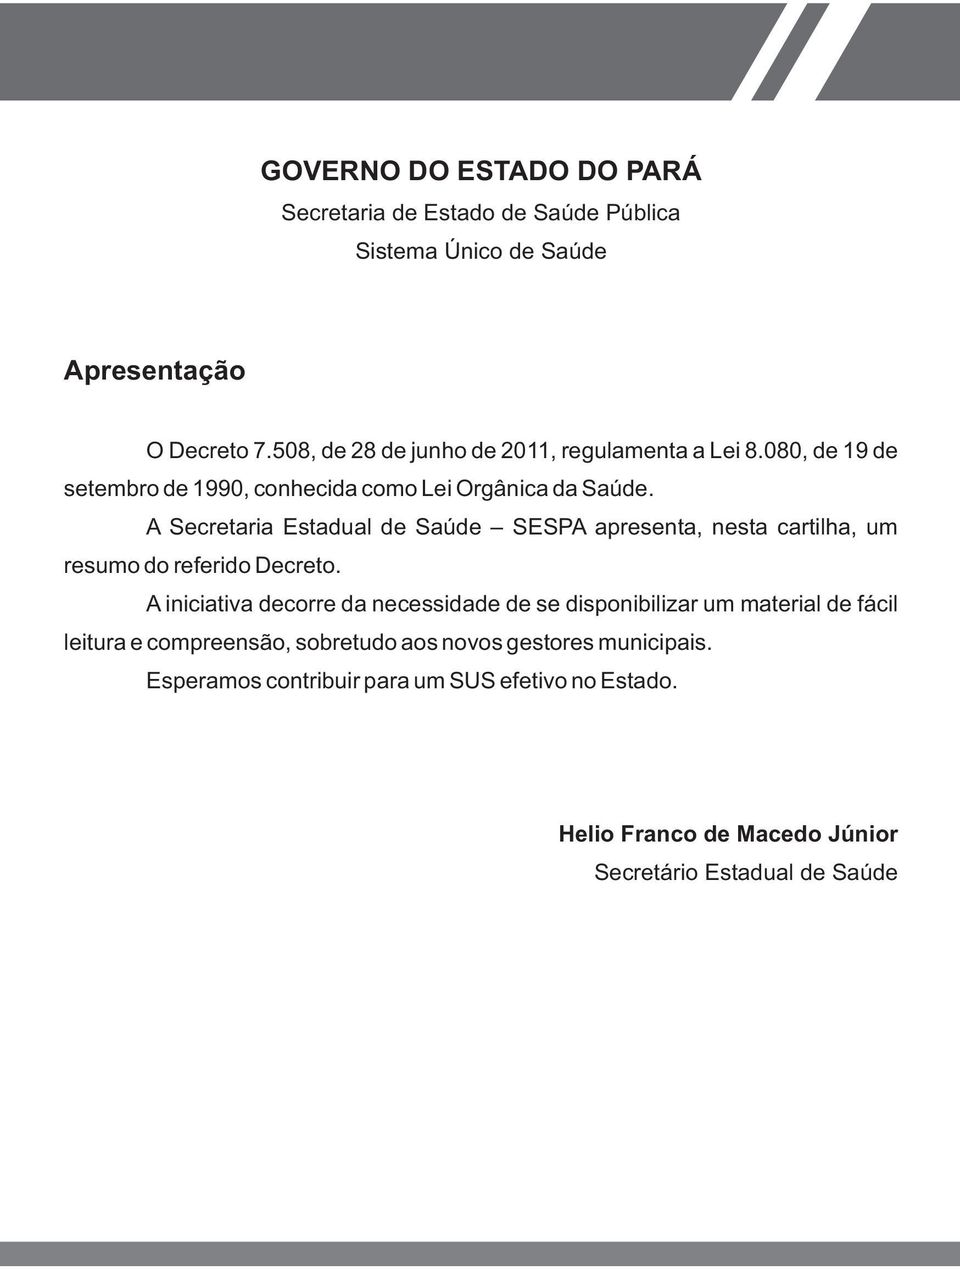 A Secretaria Estadual de Saúde SESPA apresenta, nesta cartilha, um resumo do referido Decreto.